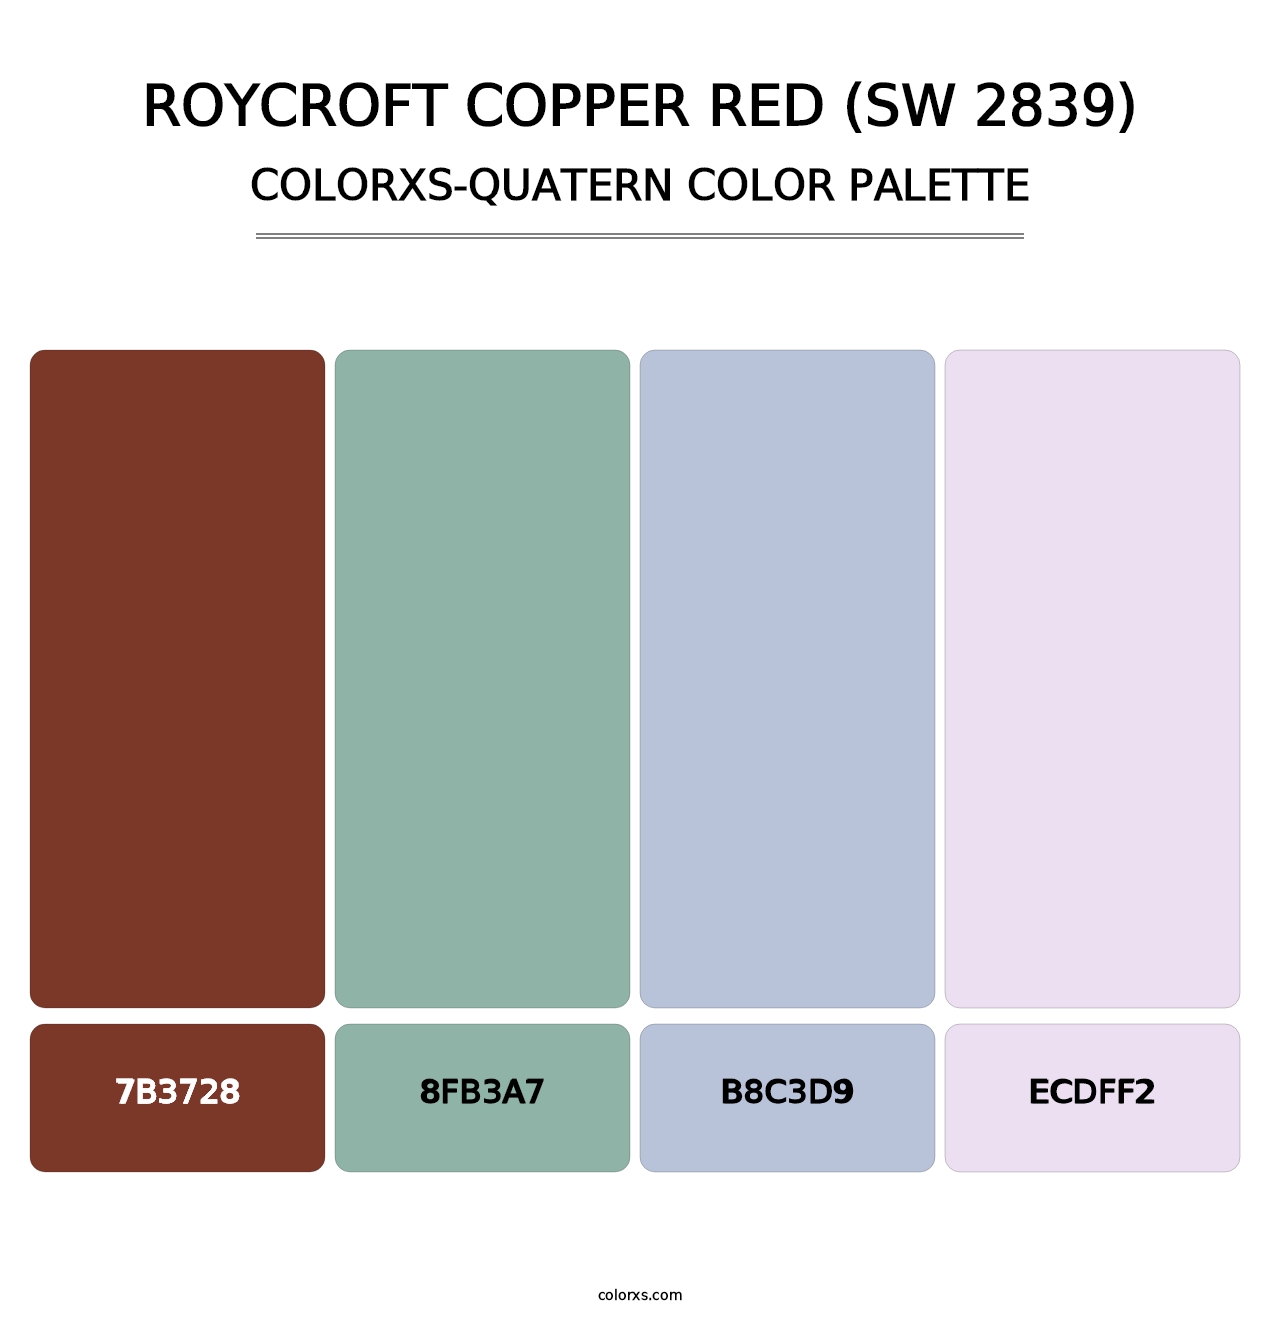 Roycroft Copper Red (SW 2839) - Colorxs Quatern Palette